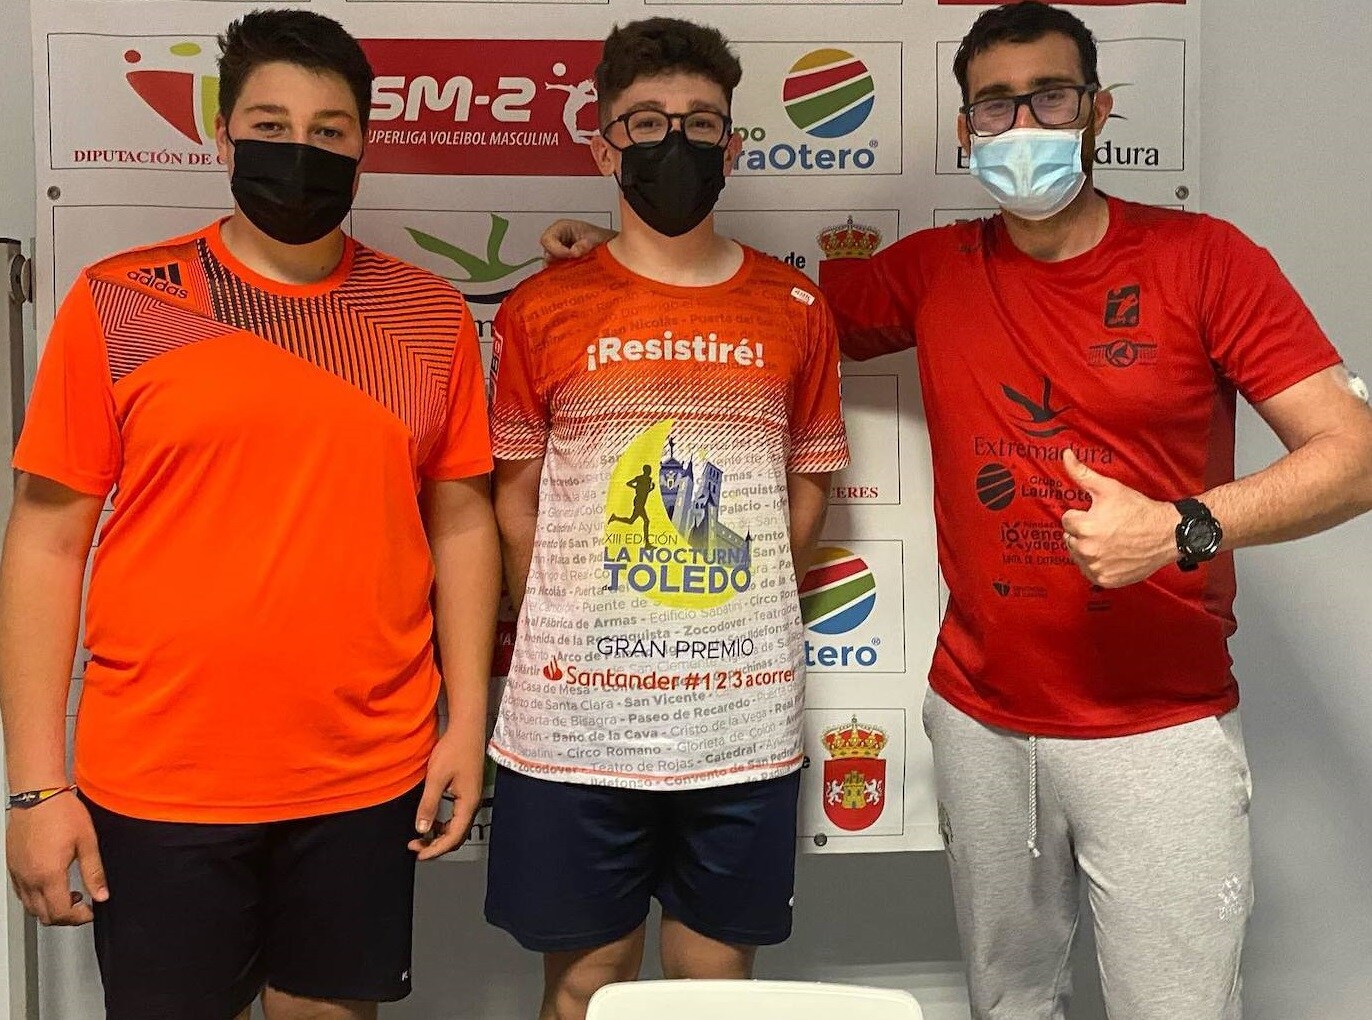 Enrique González y Jesús Pizarro, nuevos componentes del equipo juvenil masculino de voleibol